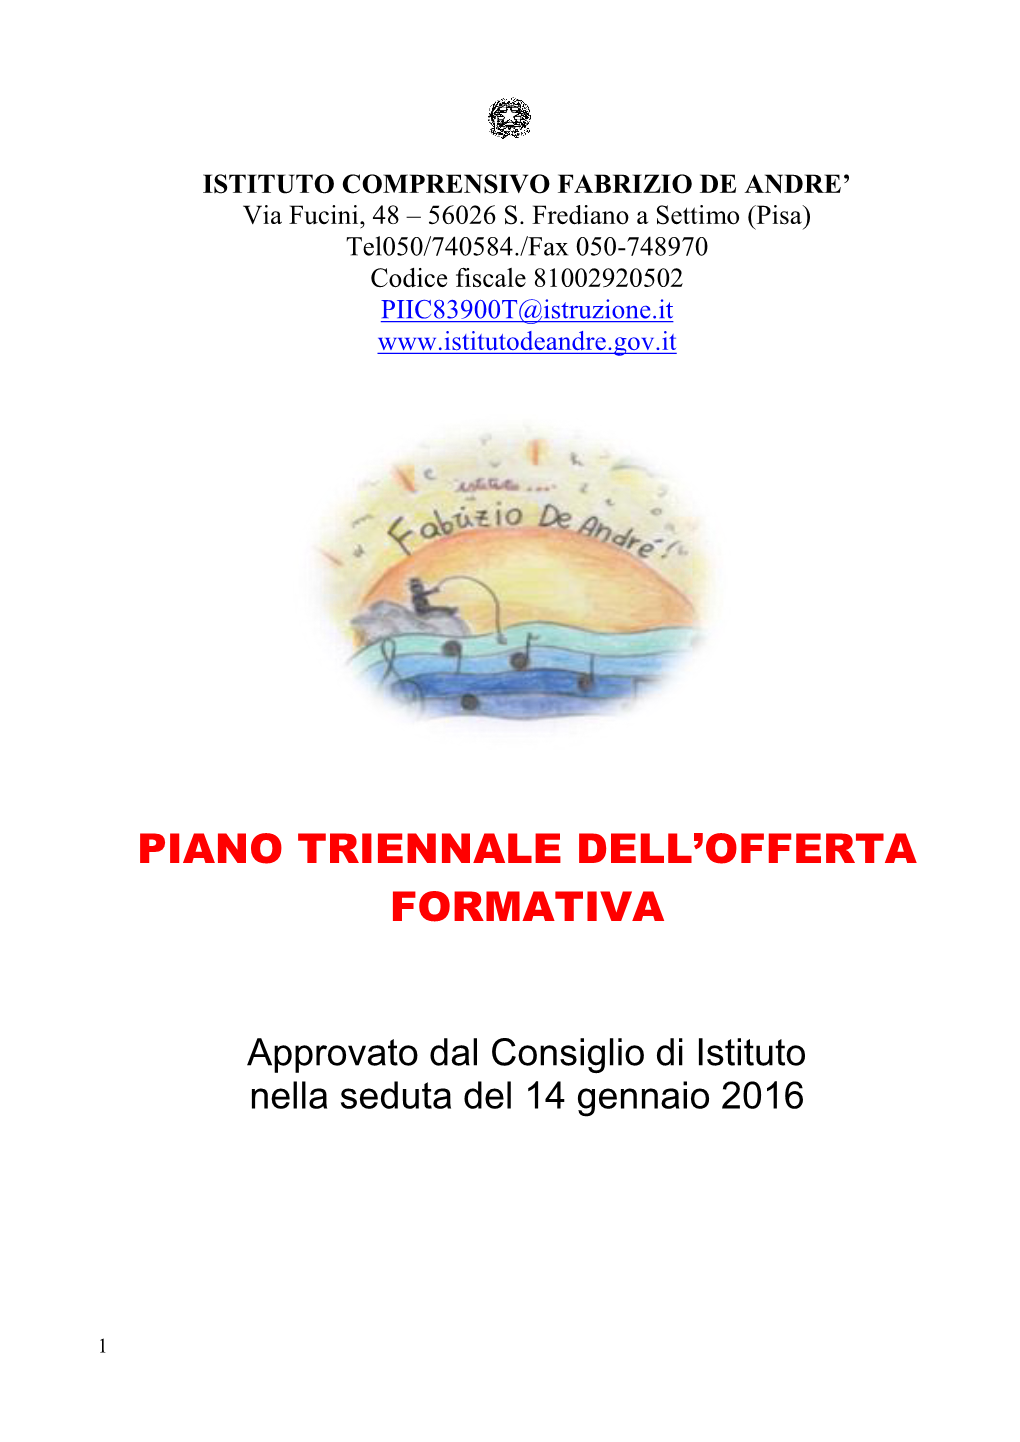 56026 S.Frediano a Settimo (Pisa) Tel 050-740584